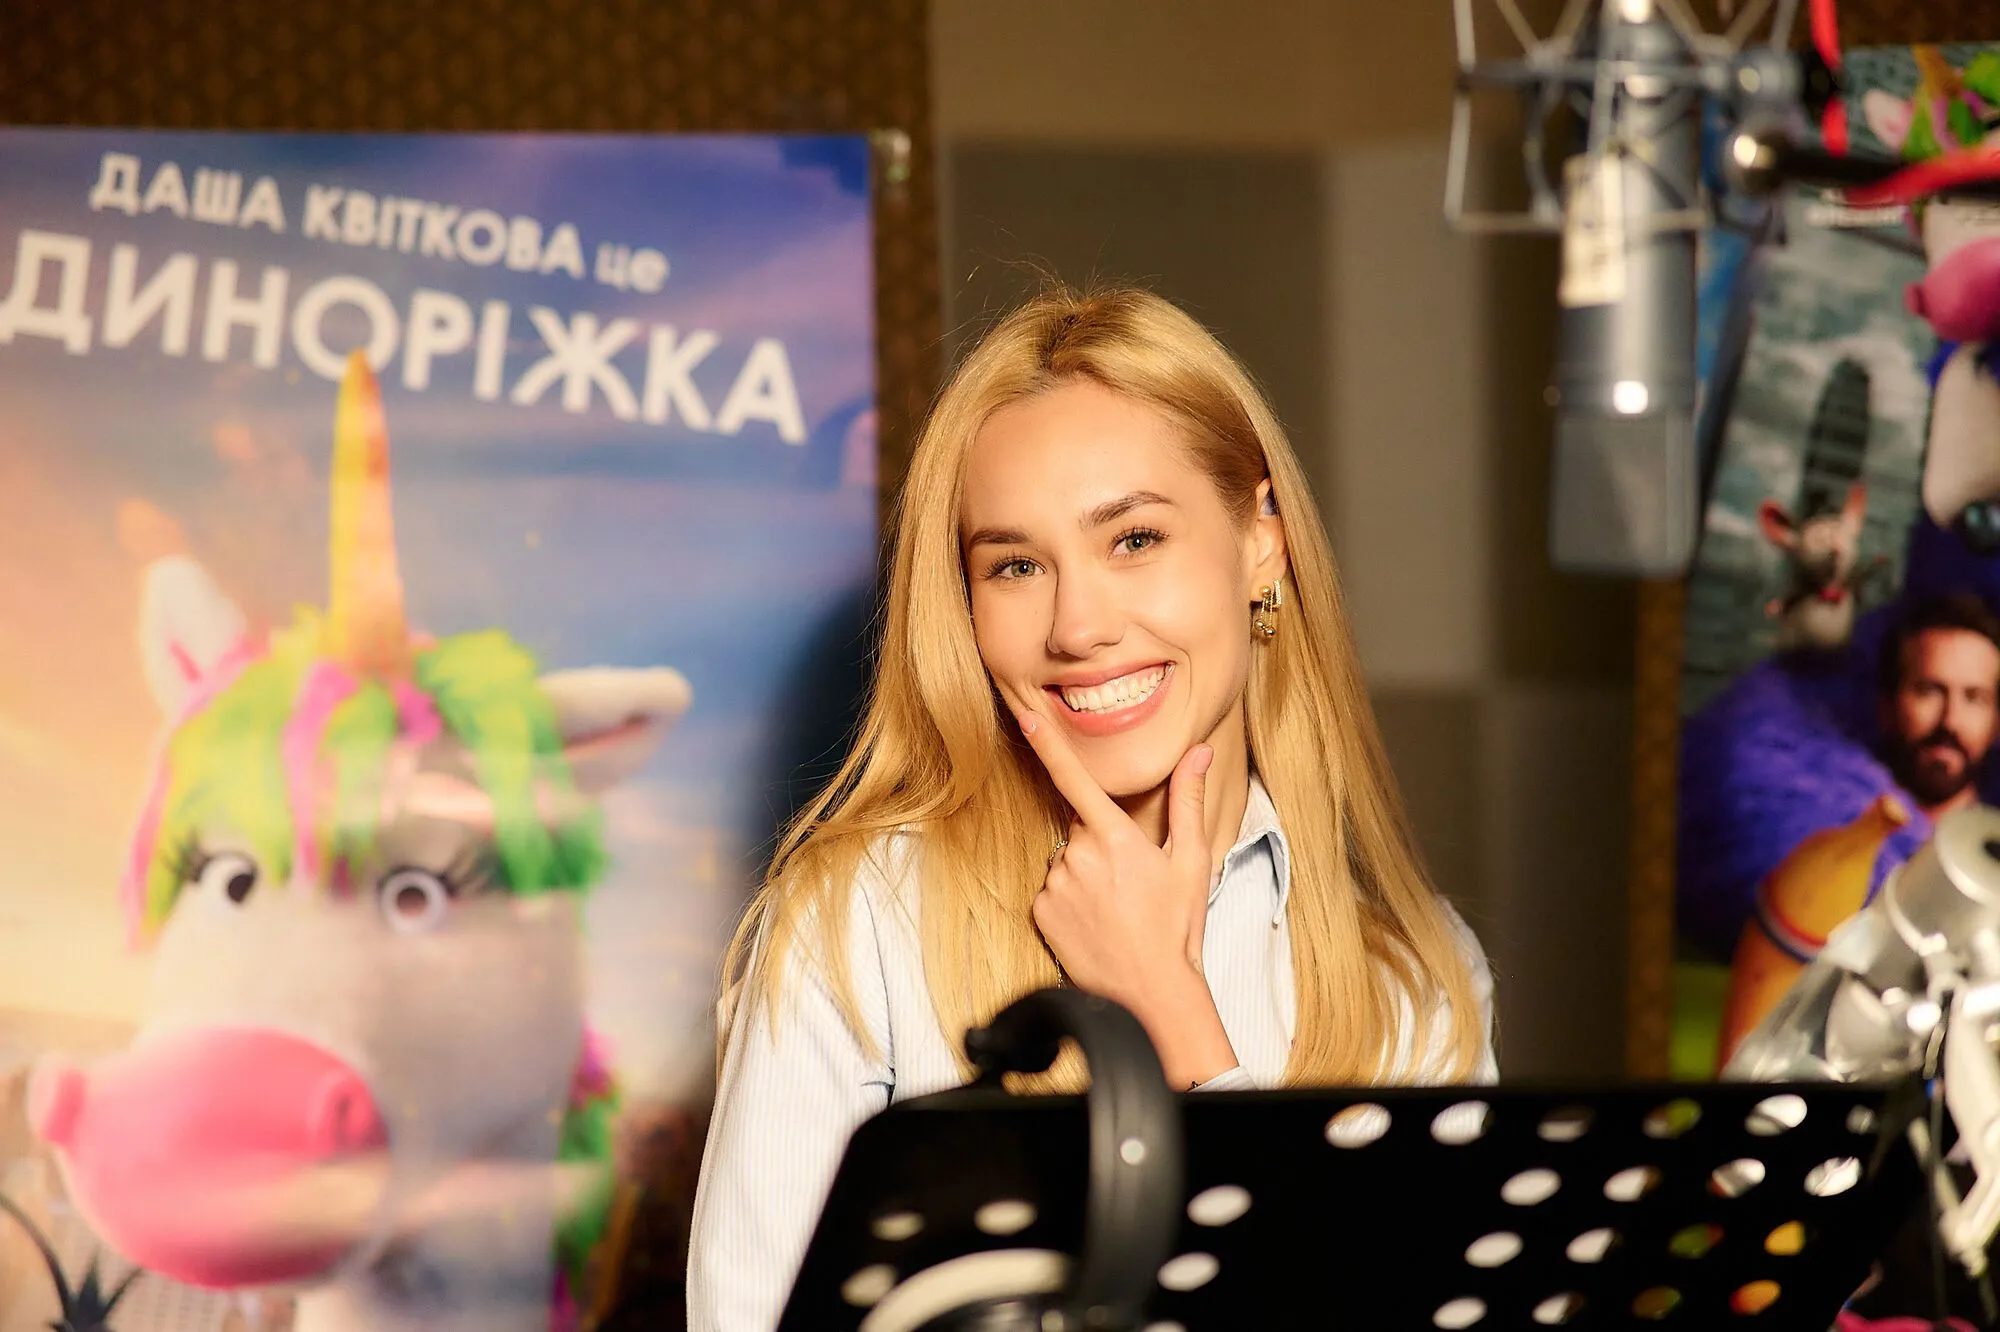 Даша Квіткова та Назар Задніпровський озвучили химерних персонажів сімейної комедії "Уявні друзі"